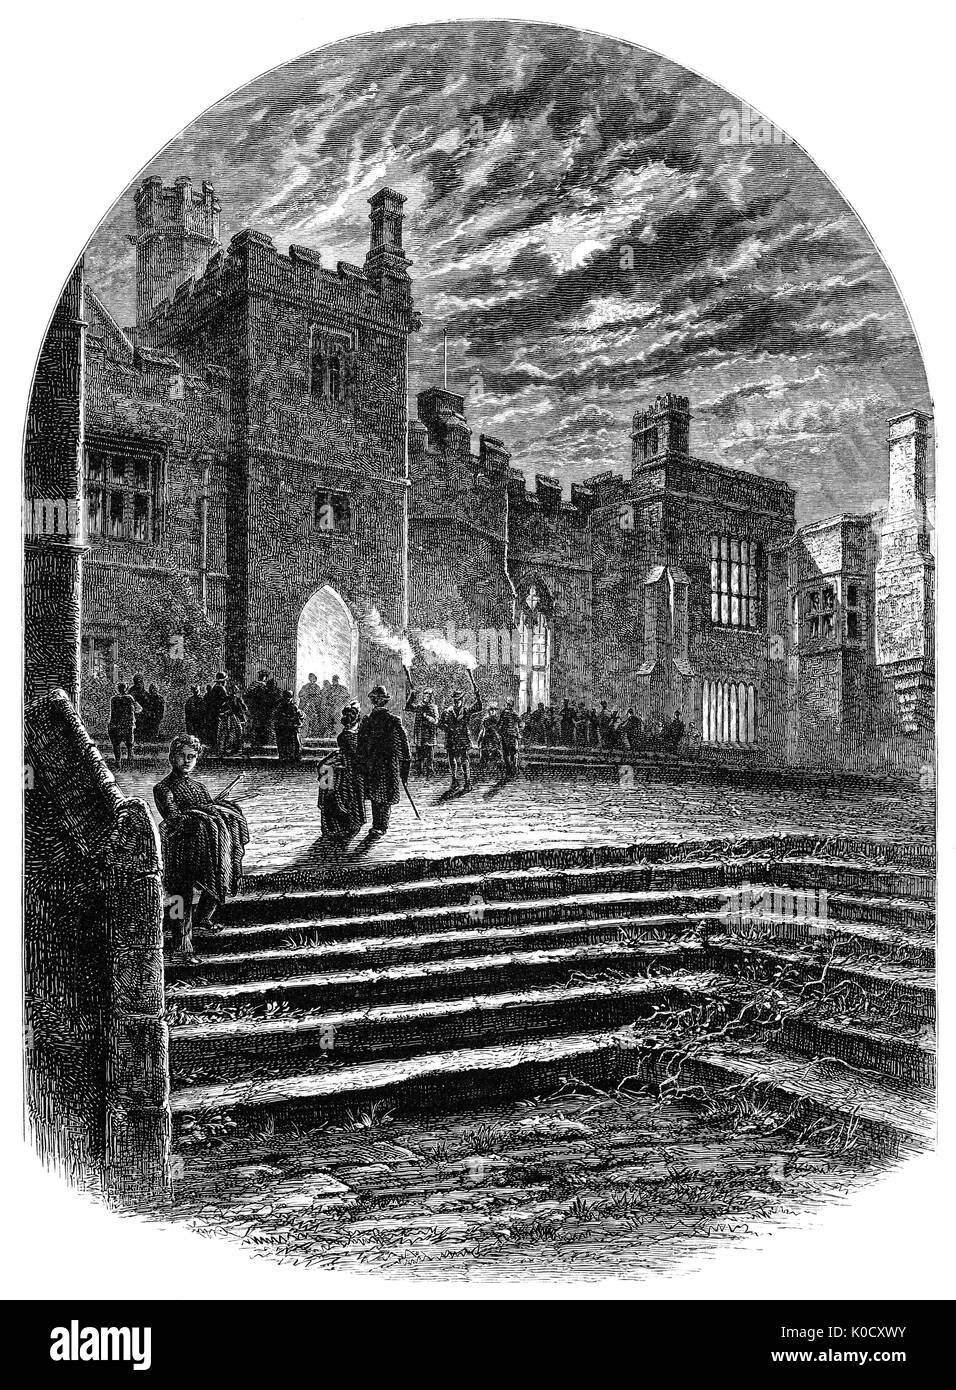 1870 : une vue de la nuit de la cour de Haddon Hall. L'anglaise sur la rivière Wye près de Bakewell, est l'un des sièges du Duc de Rutland. Les origines de la salle date du 11ème siècle, salle Tudor et médiévale actuelle comprend les ajouts ajoutés à différentes étapes entre le 13e et le 17e siècles. Le Derbyshire, Angleterre. Banque D'Images